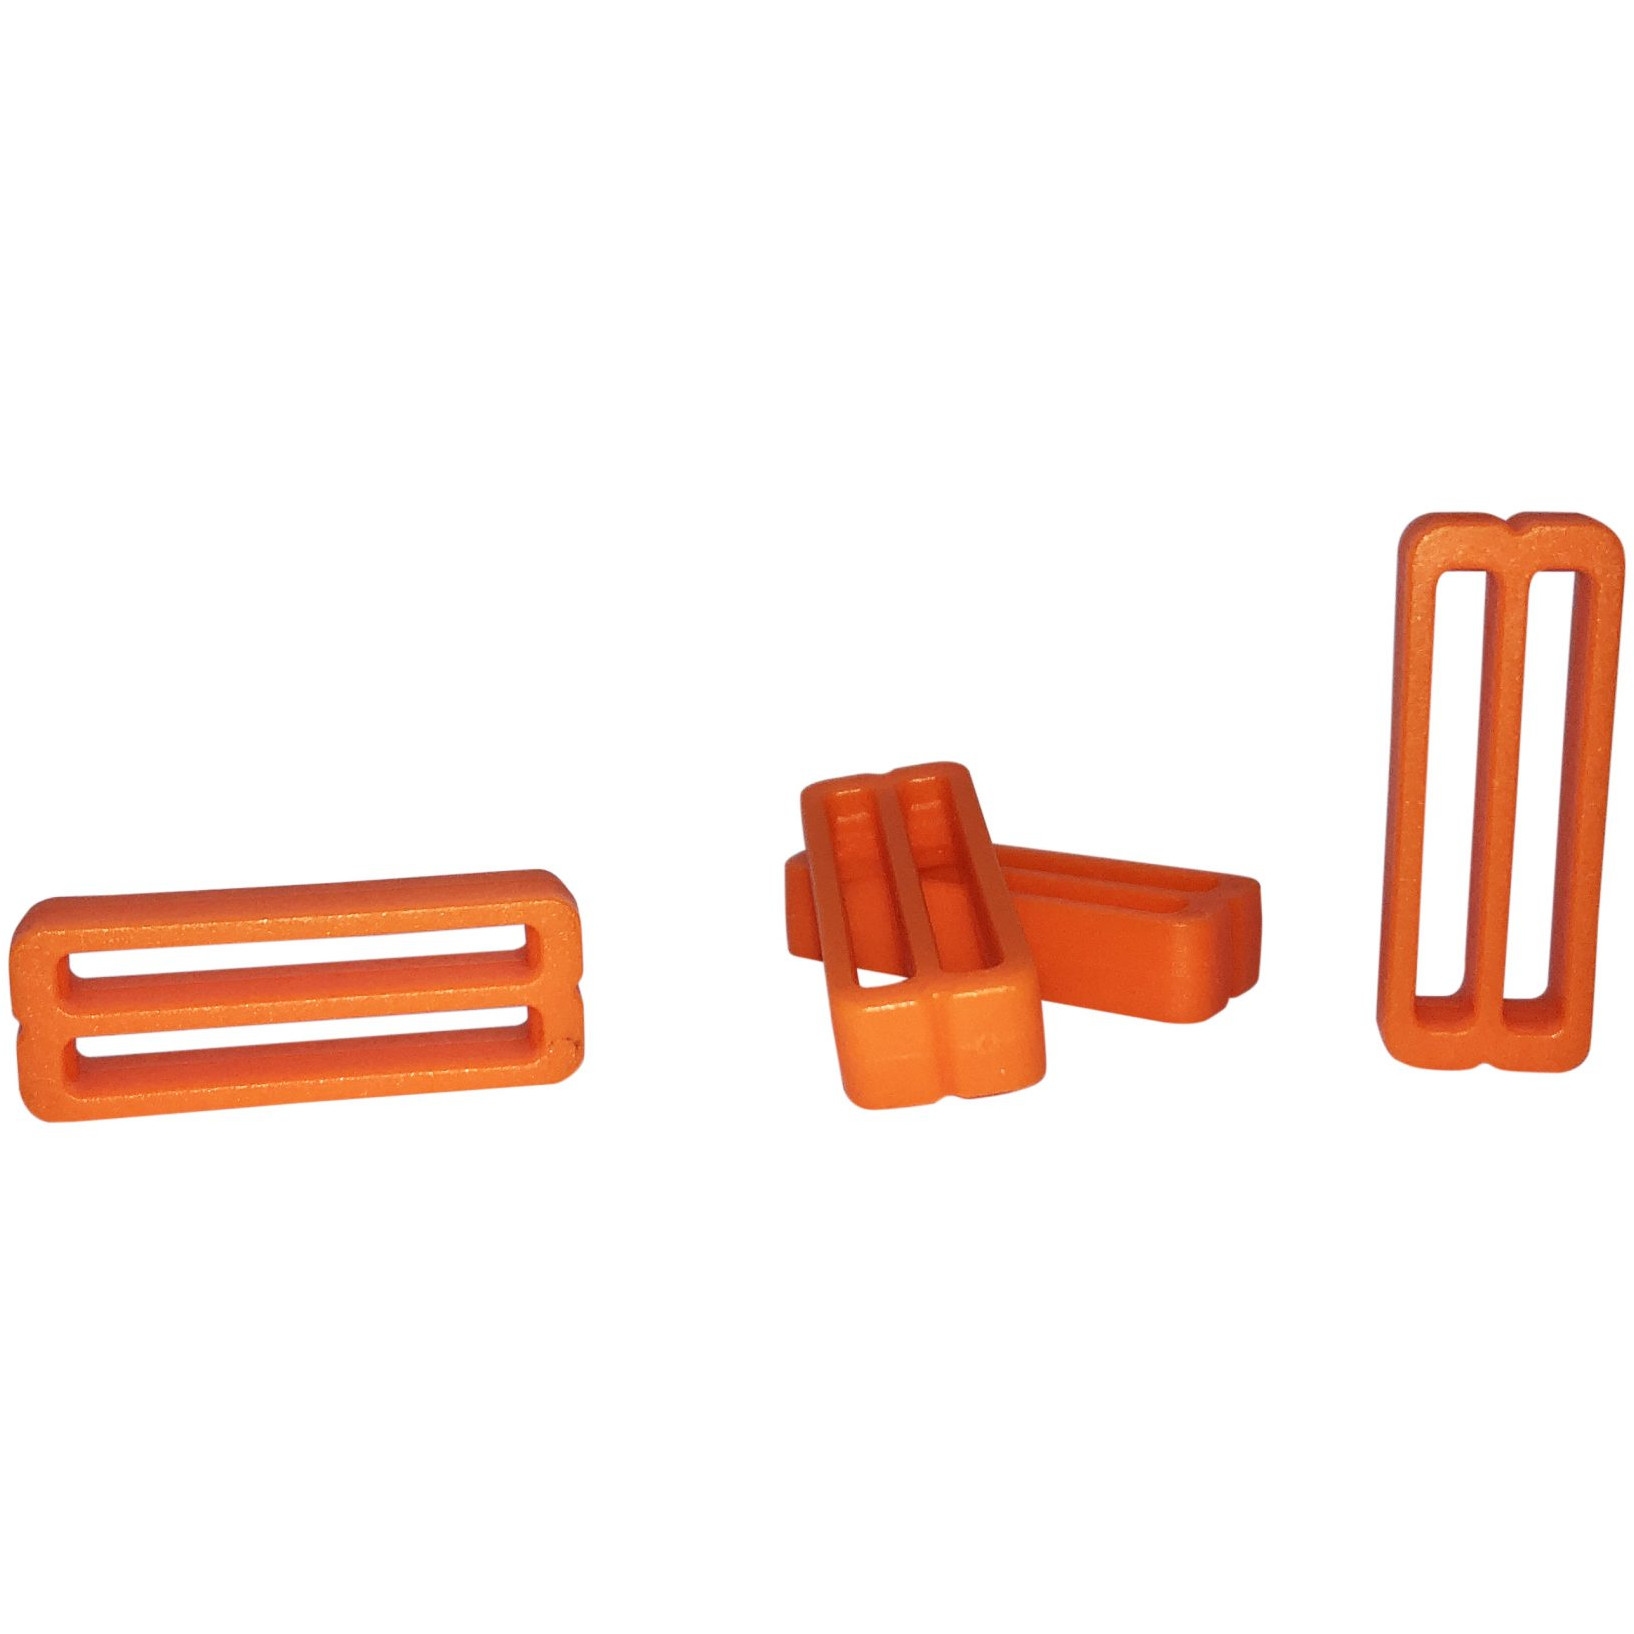 Produktbild von FixPlus Strapkeeper für 35 cm, 46cm &amp; 66cm Straps - 4 Stück - orange